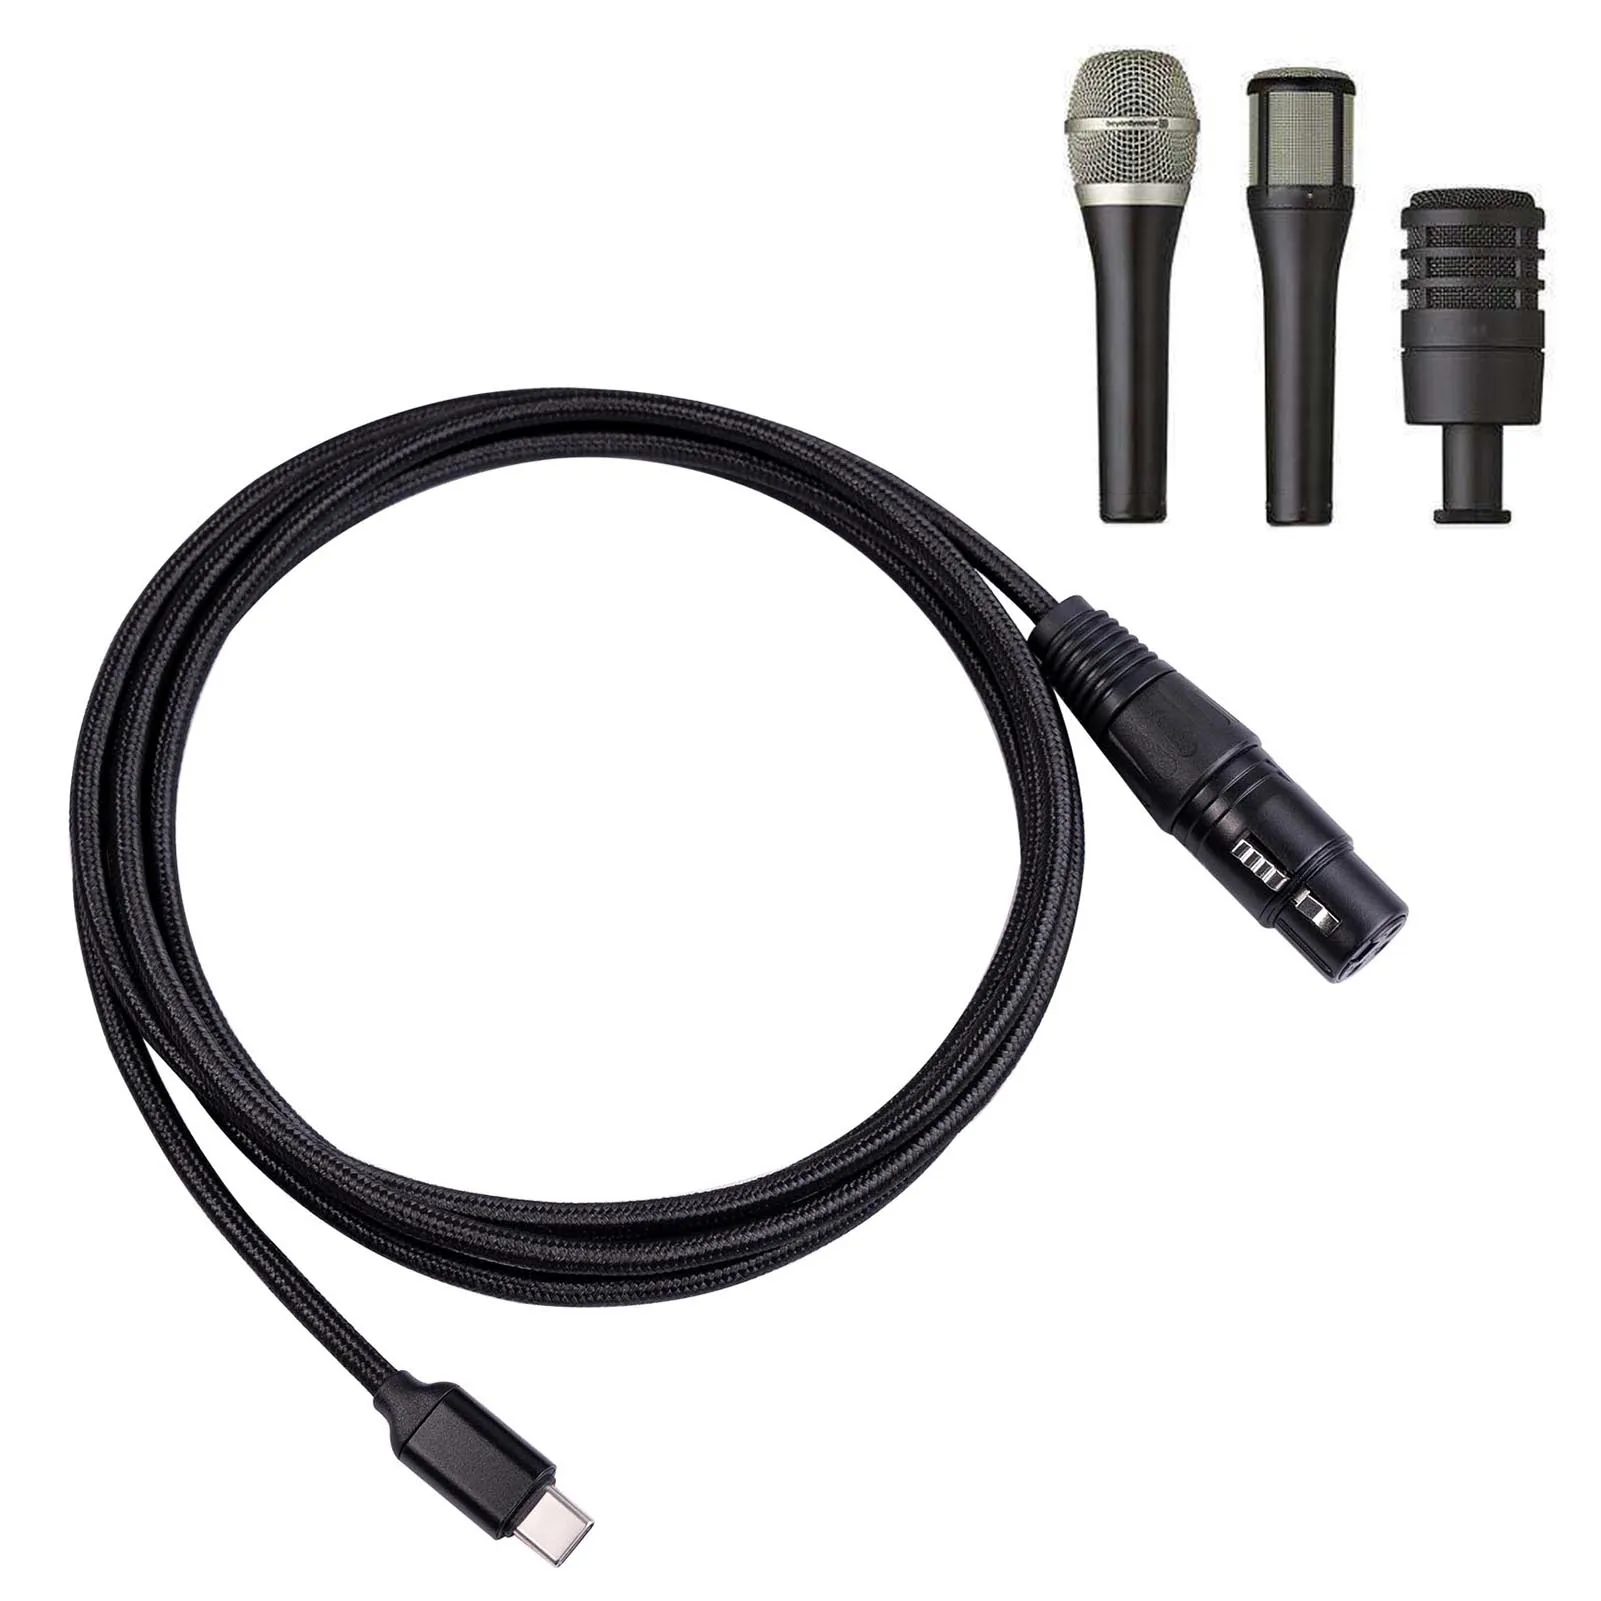 USB tip C XLR adaptör tipi C XLR konnektör adaptörü ses veri kablosu dahili yüksek end çip narin tasarım dayanıklı ses